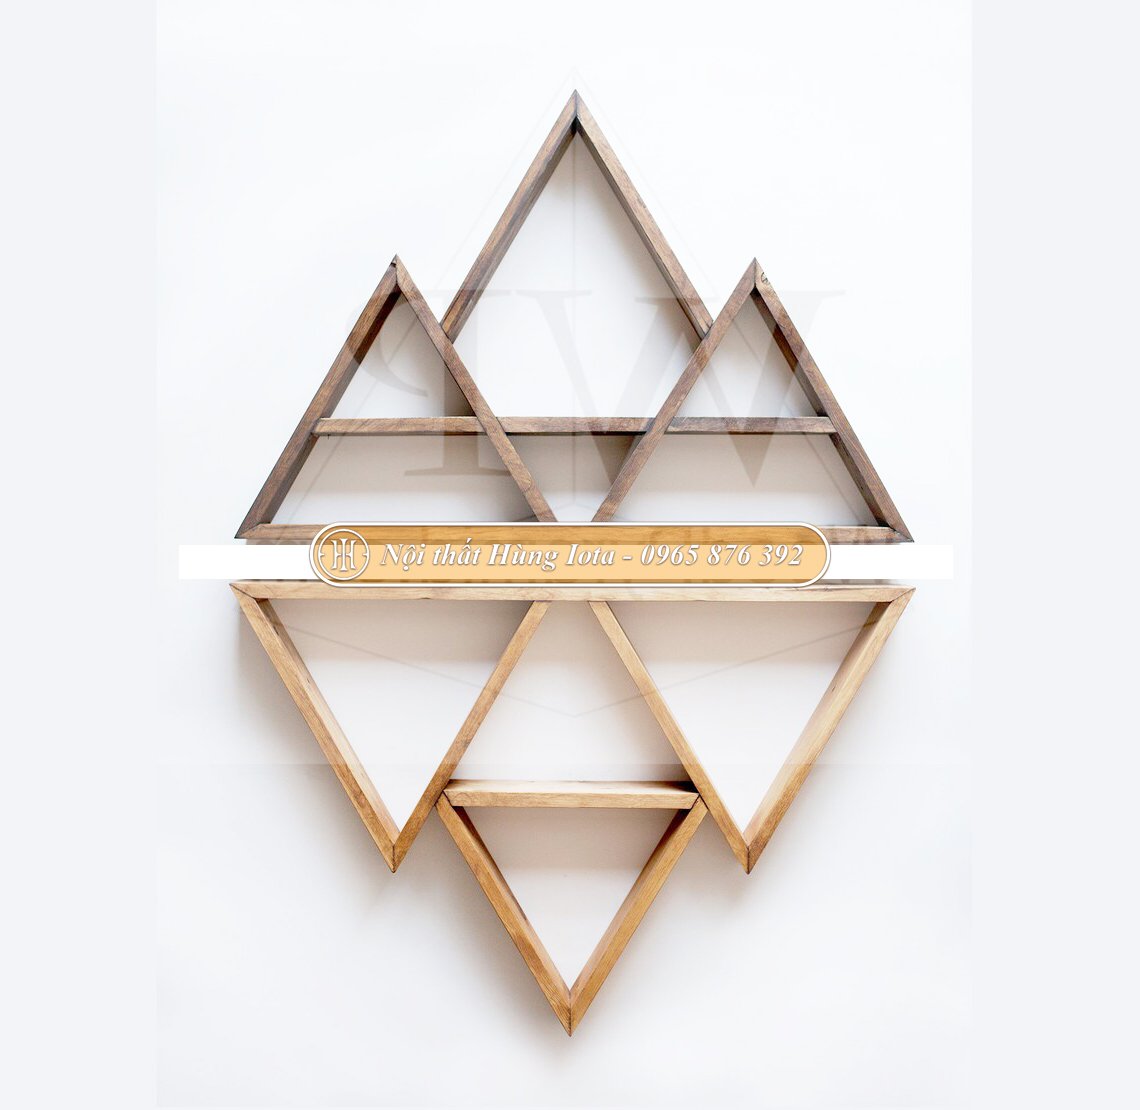 Kệ gỗ treo tường decor hình tam giác độc đáo